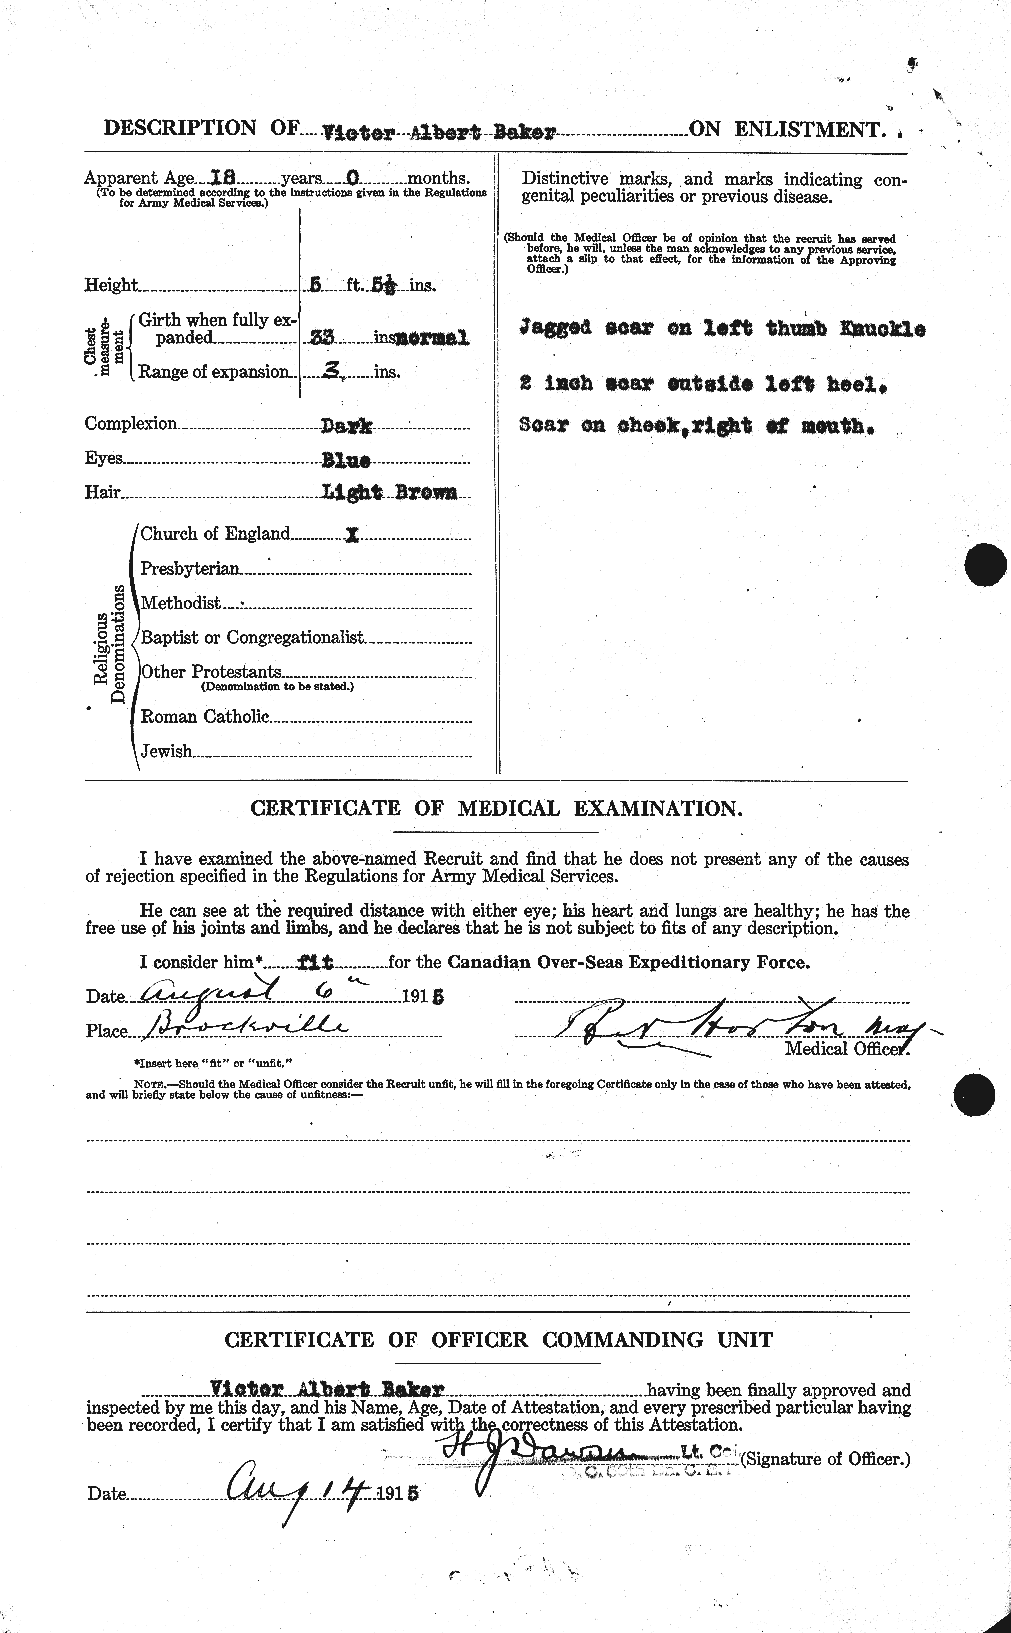 Dossiers du Personnel de la Première Guerre mondiale - CEC 221433b